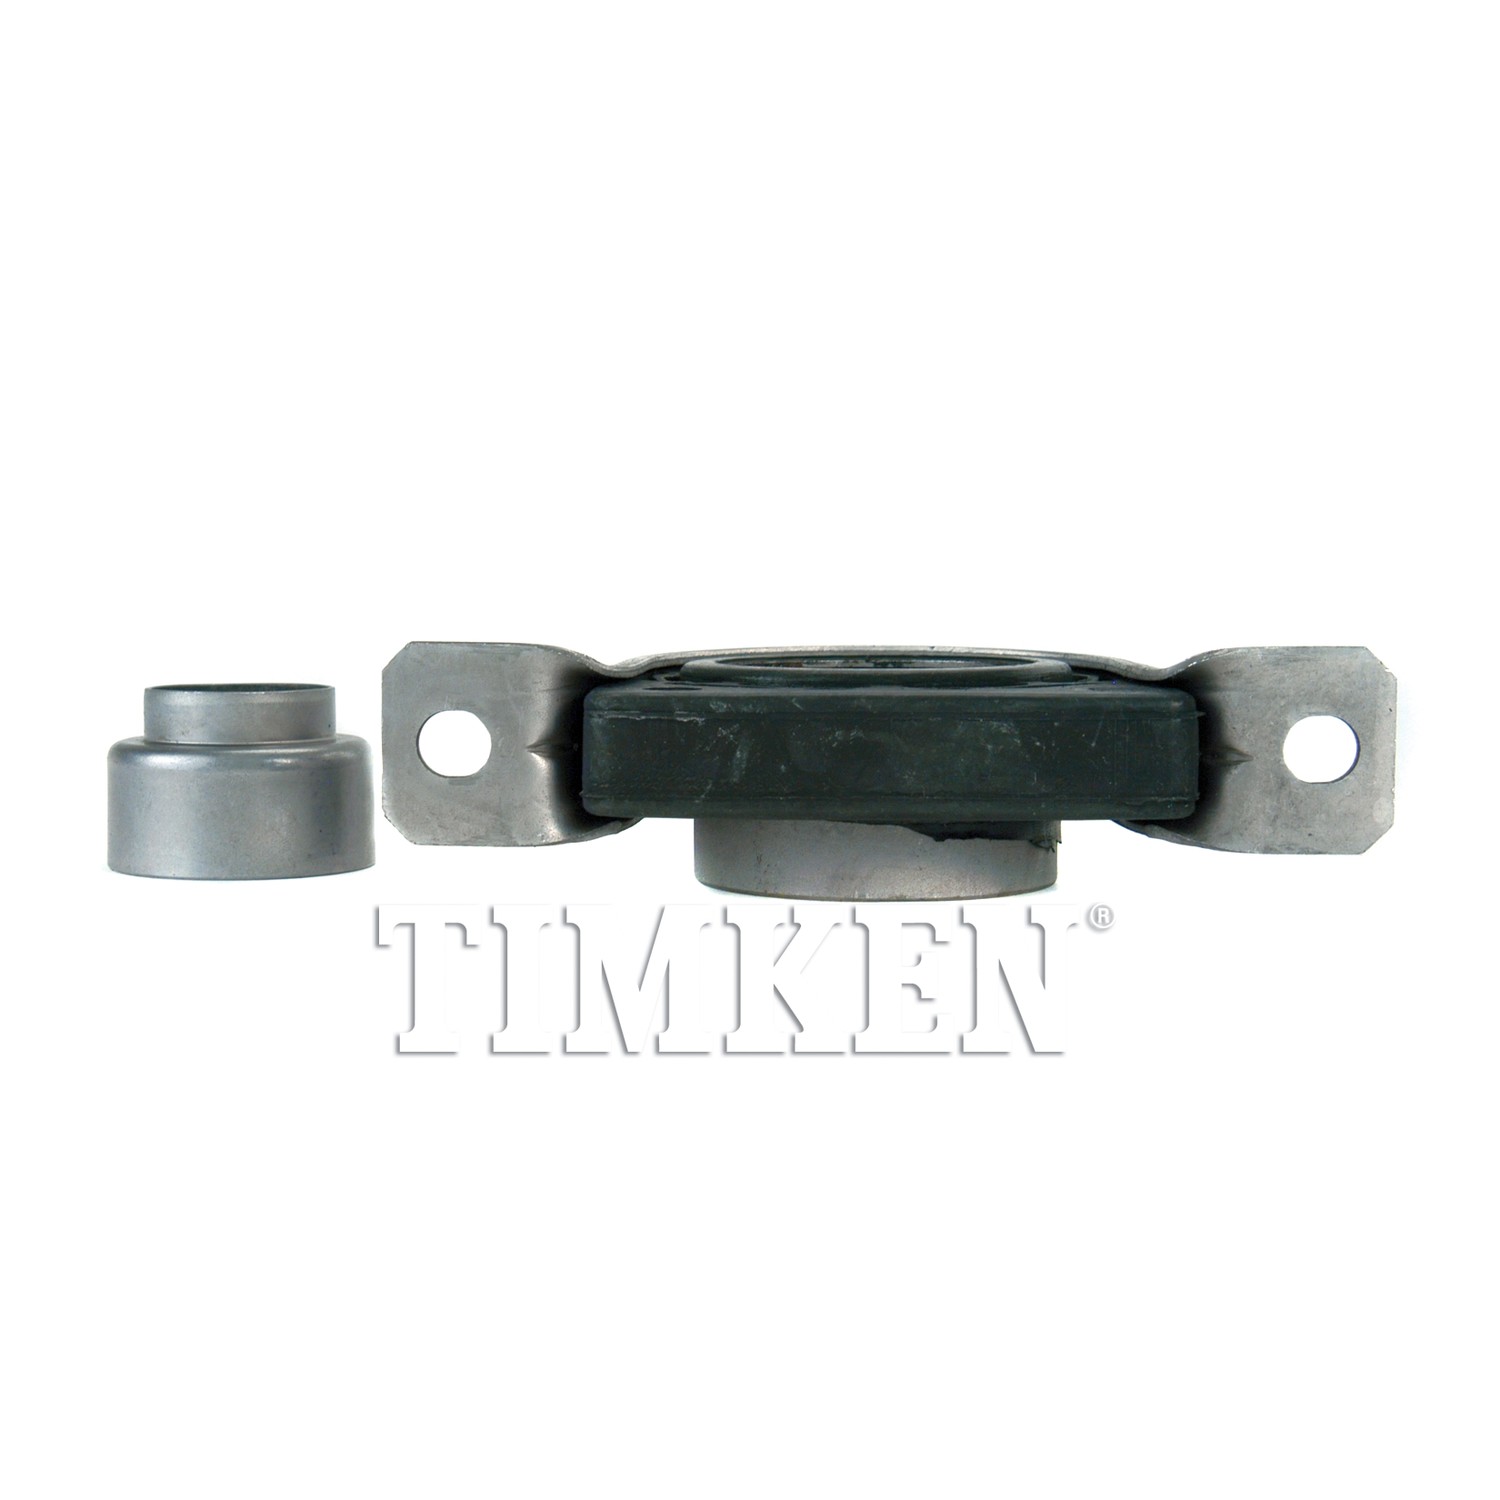 TIMKEN - Drive Shaft Center Support Bearing - TIM HB4010A